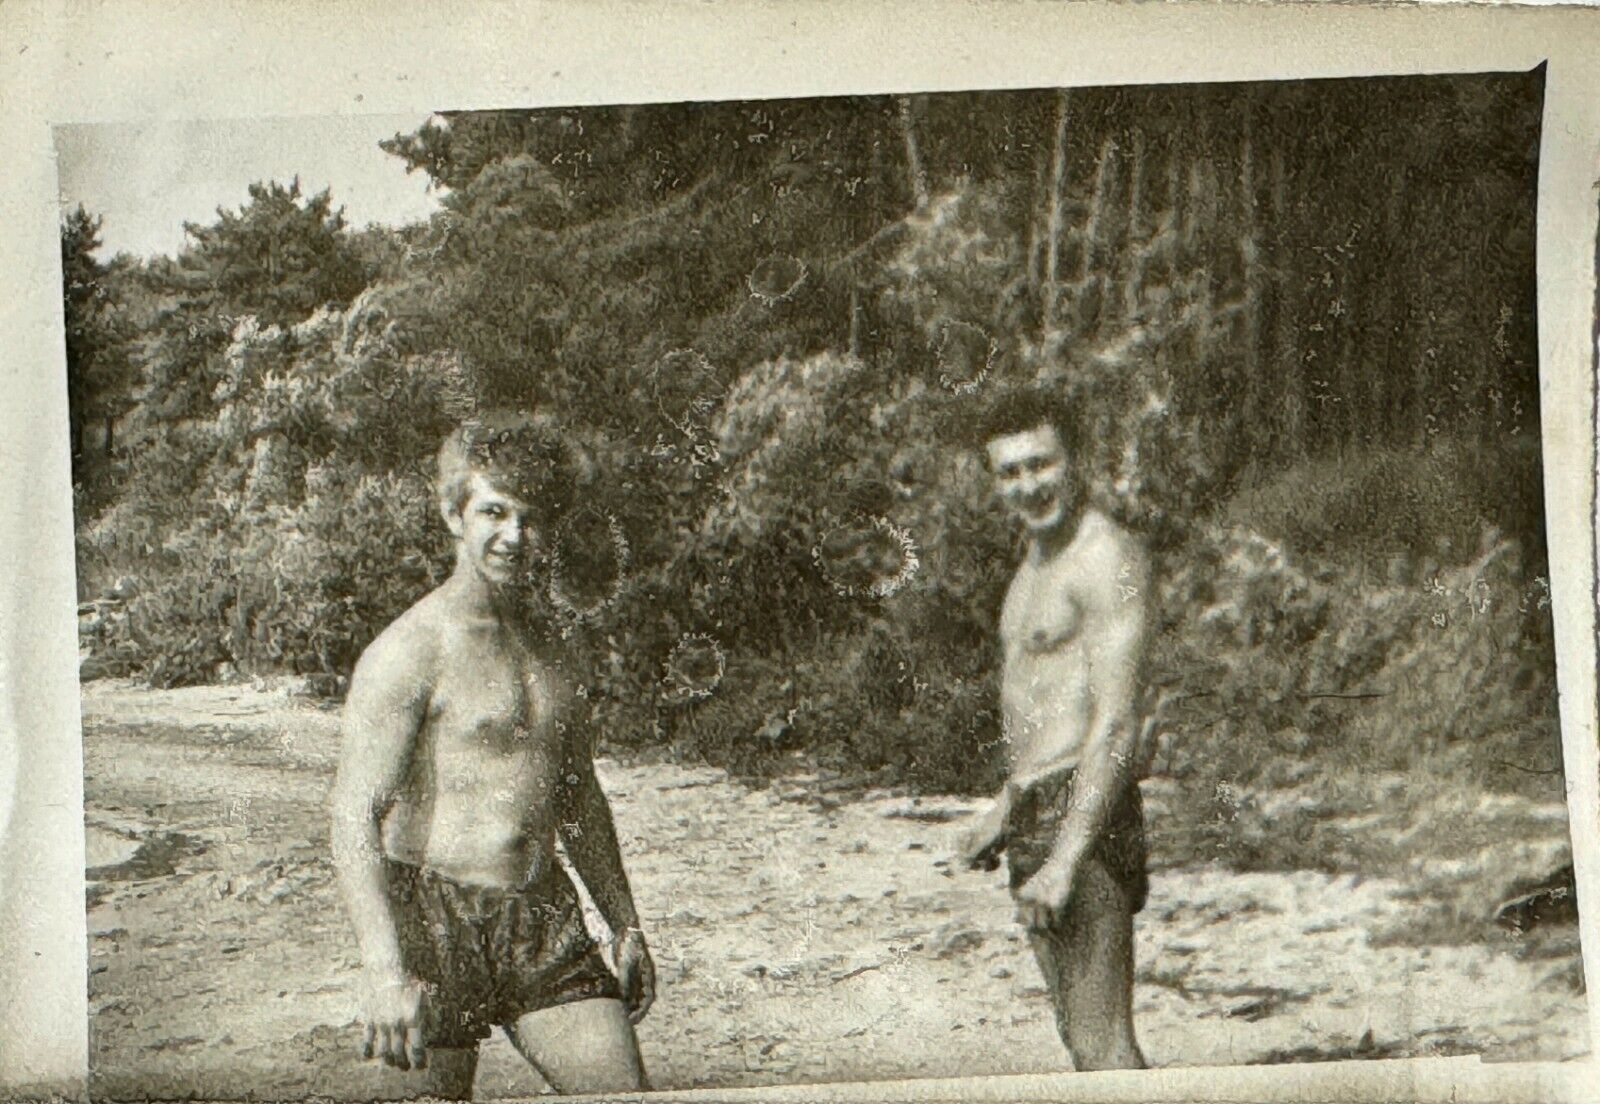 1970s Shirtless Trunks Bulge Guys Muscular Men Vintage B&W Photo Snapshot